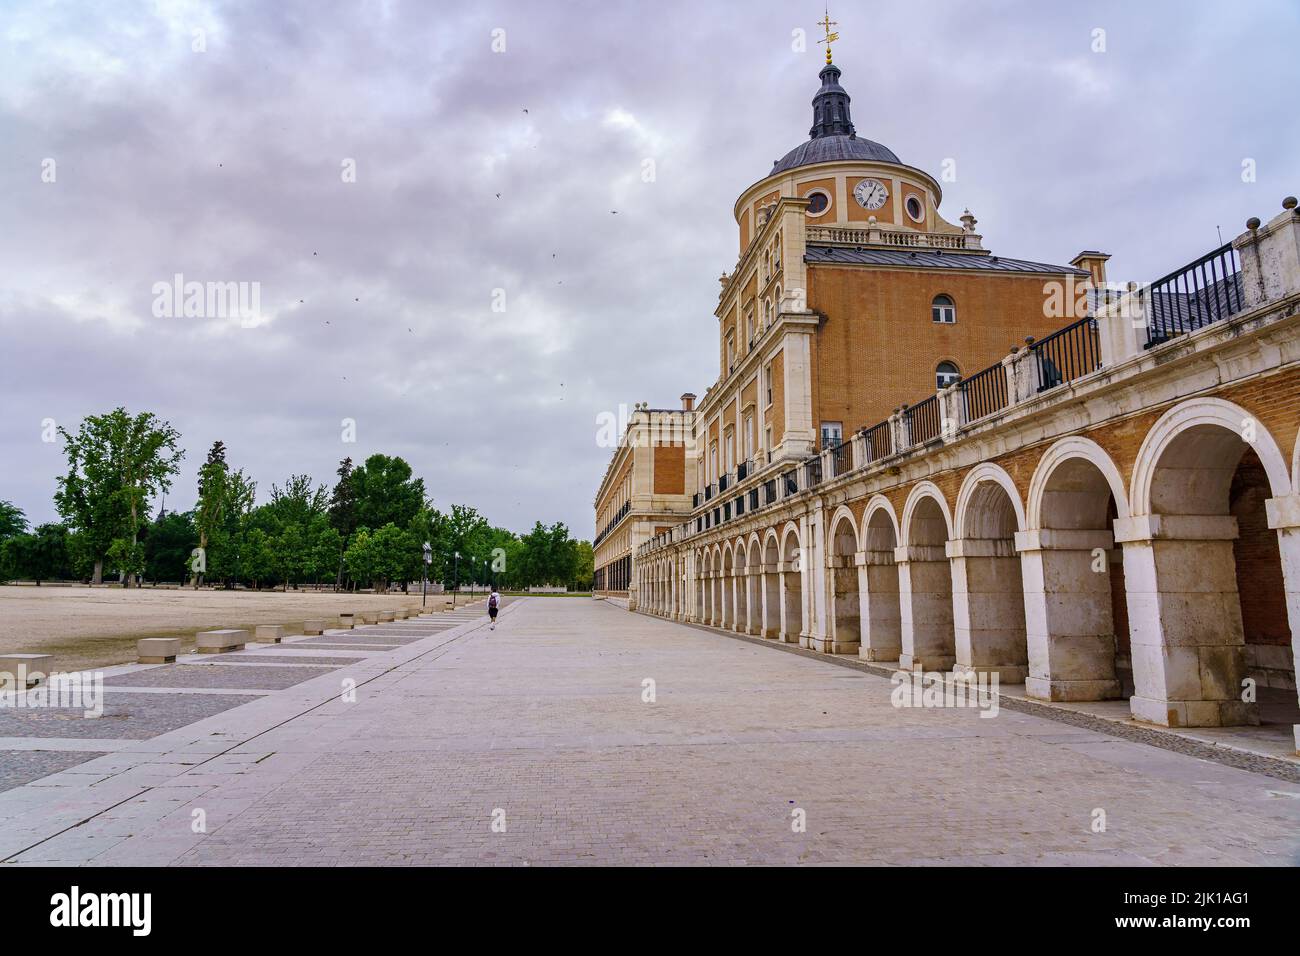 Explanada frontal del palacio real de Aranjuez con su arcada y cúpula en la parte superior. Madrid. Foto de stock